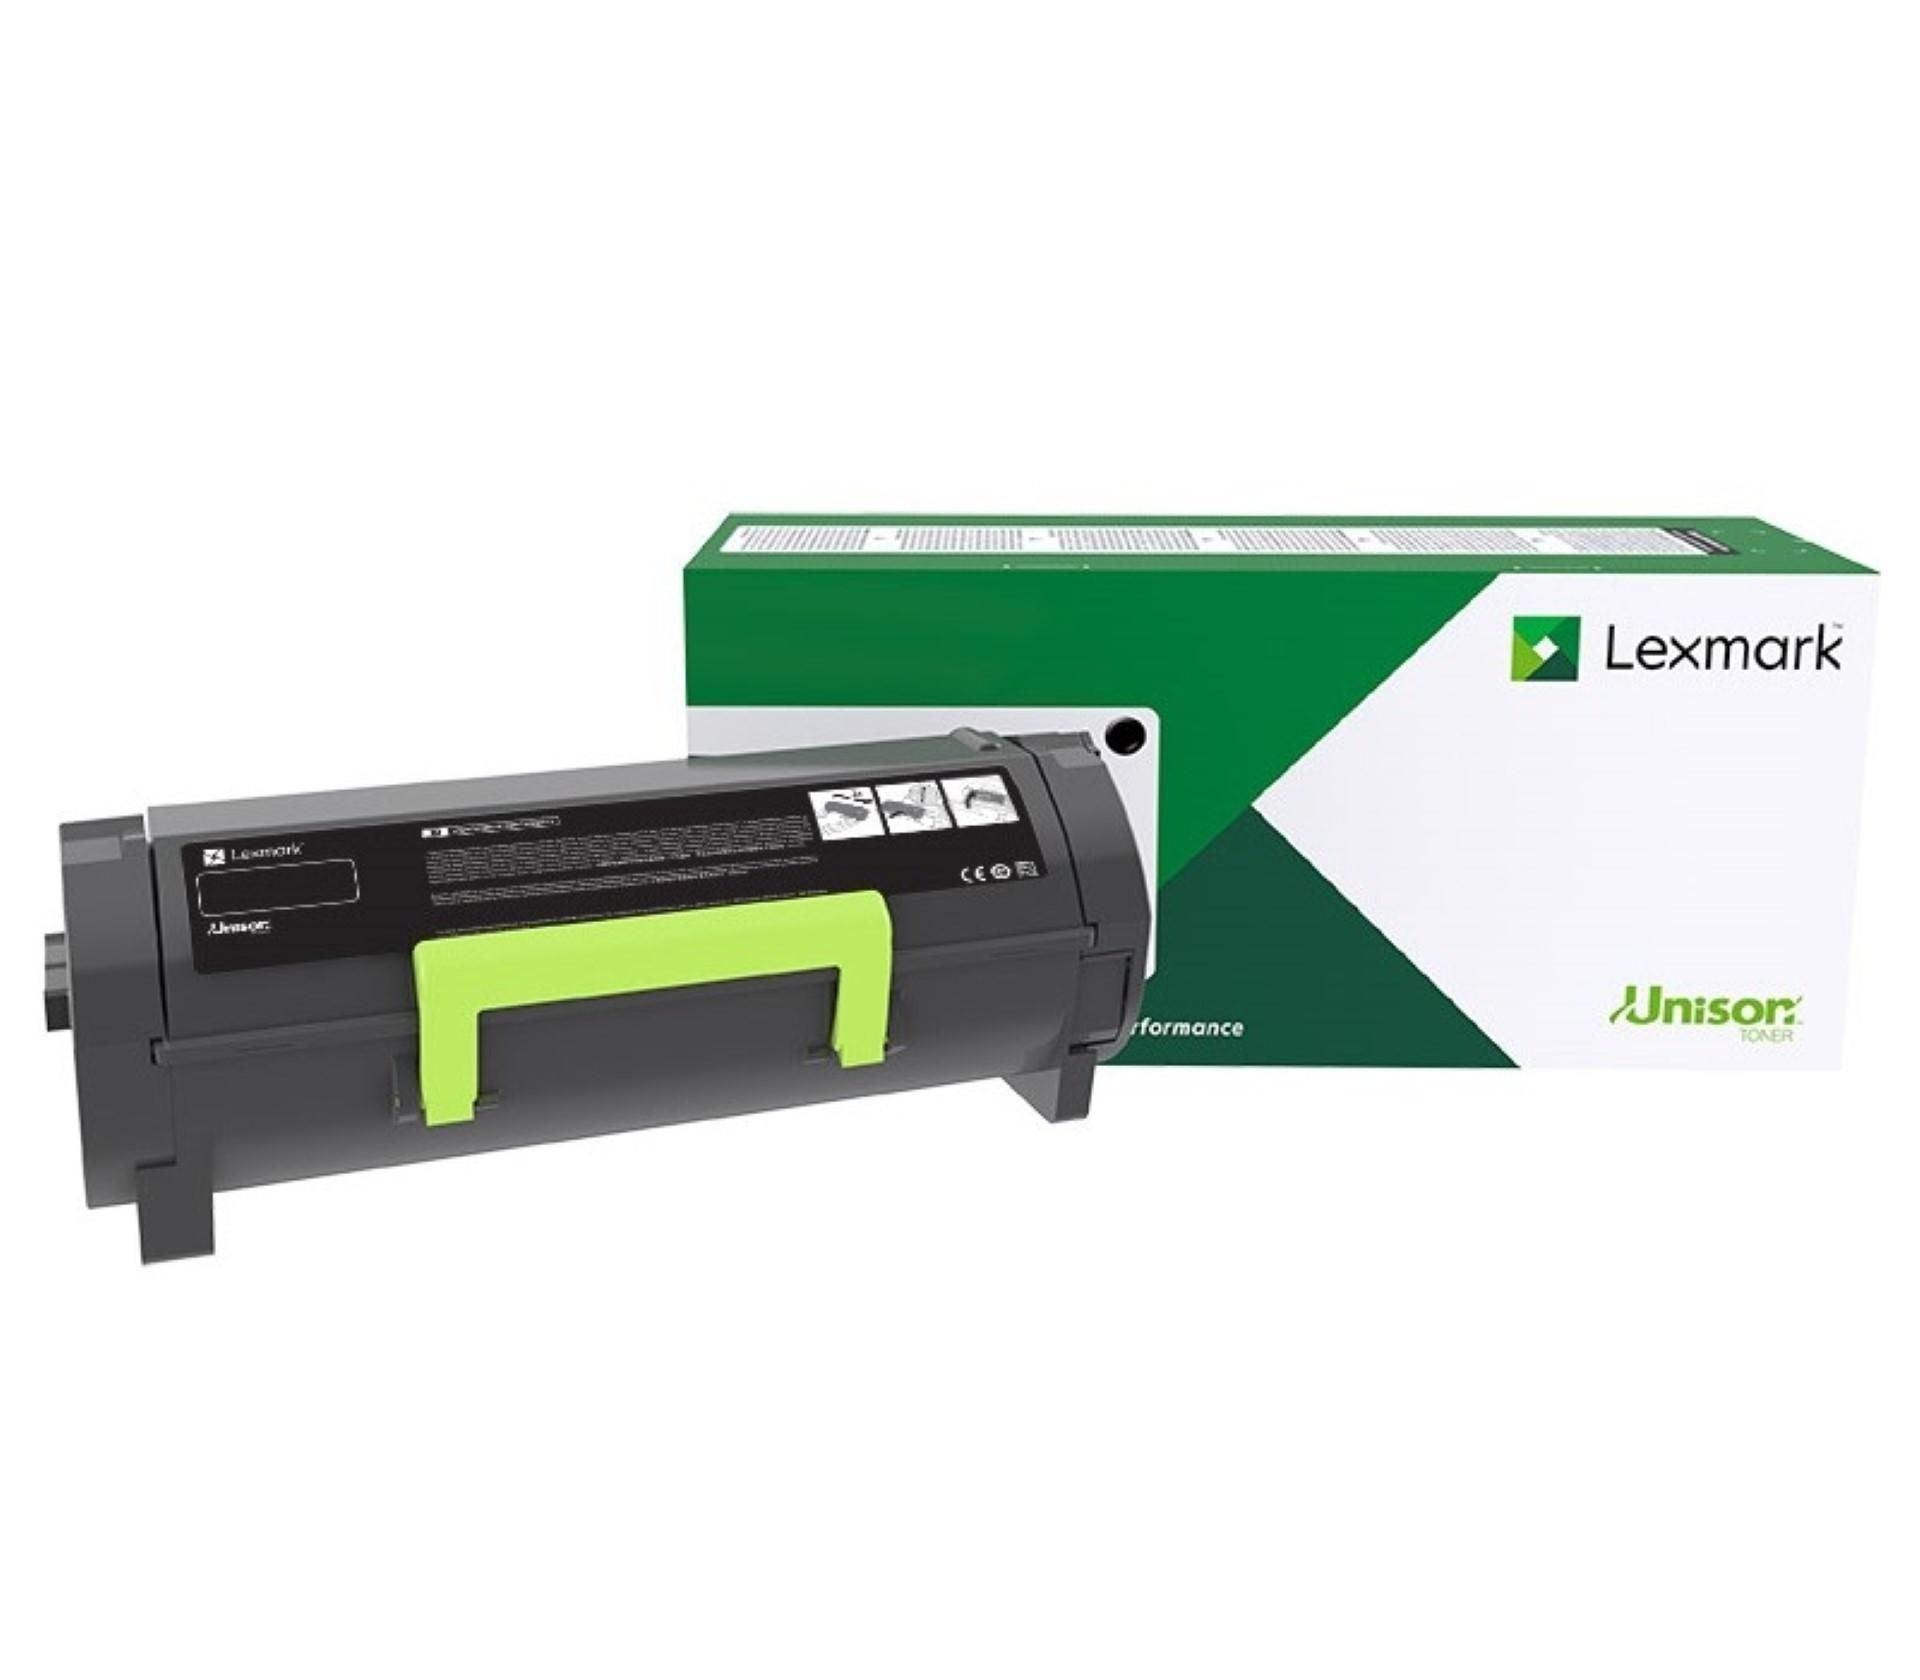 Toner Laser Lexmark / Color Magenta / Rendimiento Estandar C2340M0 / Hasta 1,000 Paginas / 5 % De Cobertura / P/Mod. C2535Dw , Mc2535Adwe